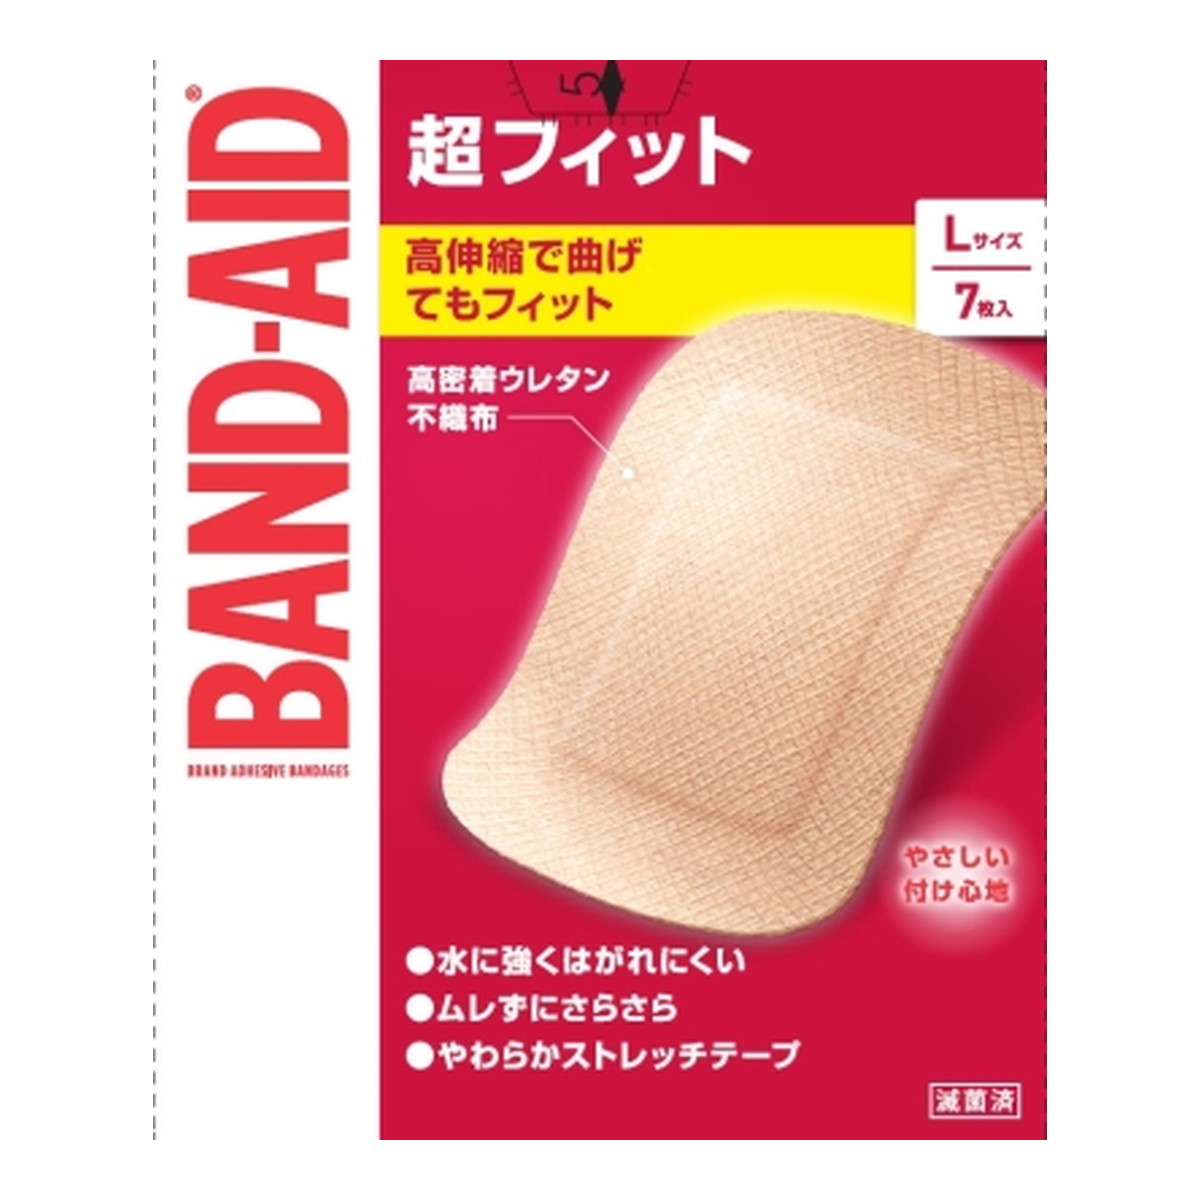 BANDーAID Kenvue バンドエイド 超フィット Lサイズ 7枚入×72個 絆創膏の商品画像